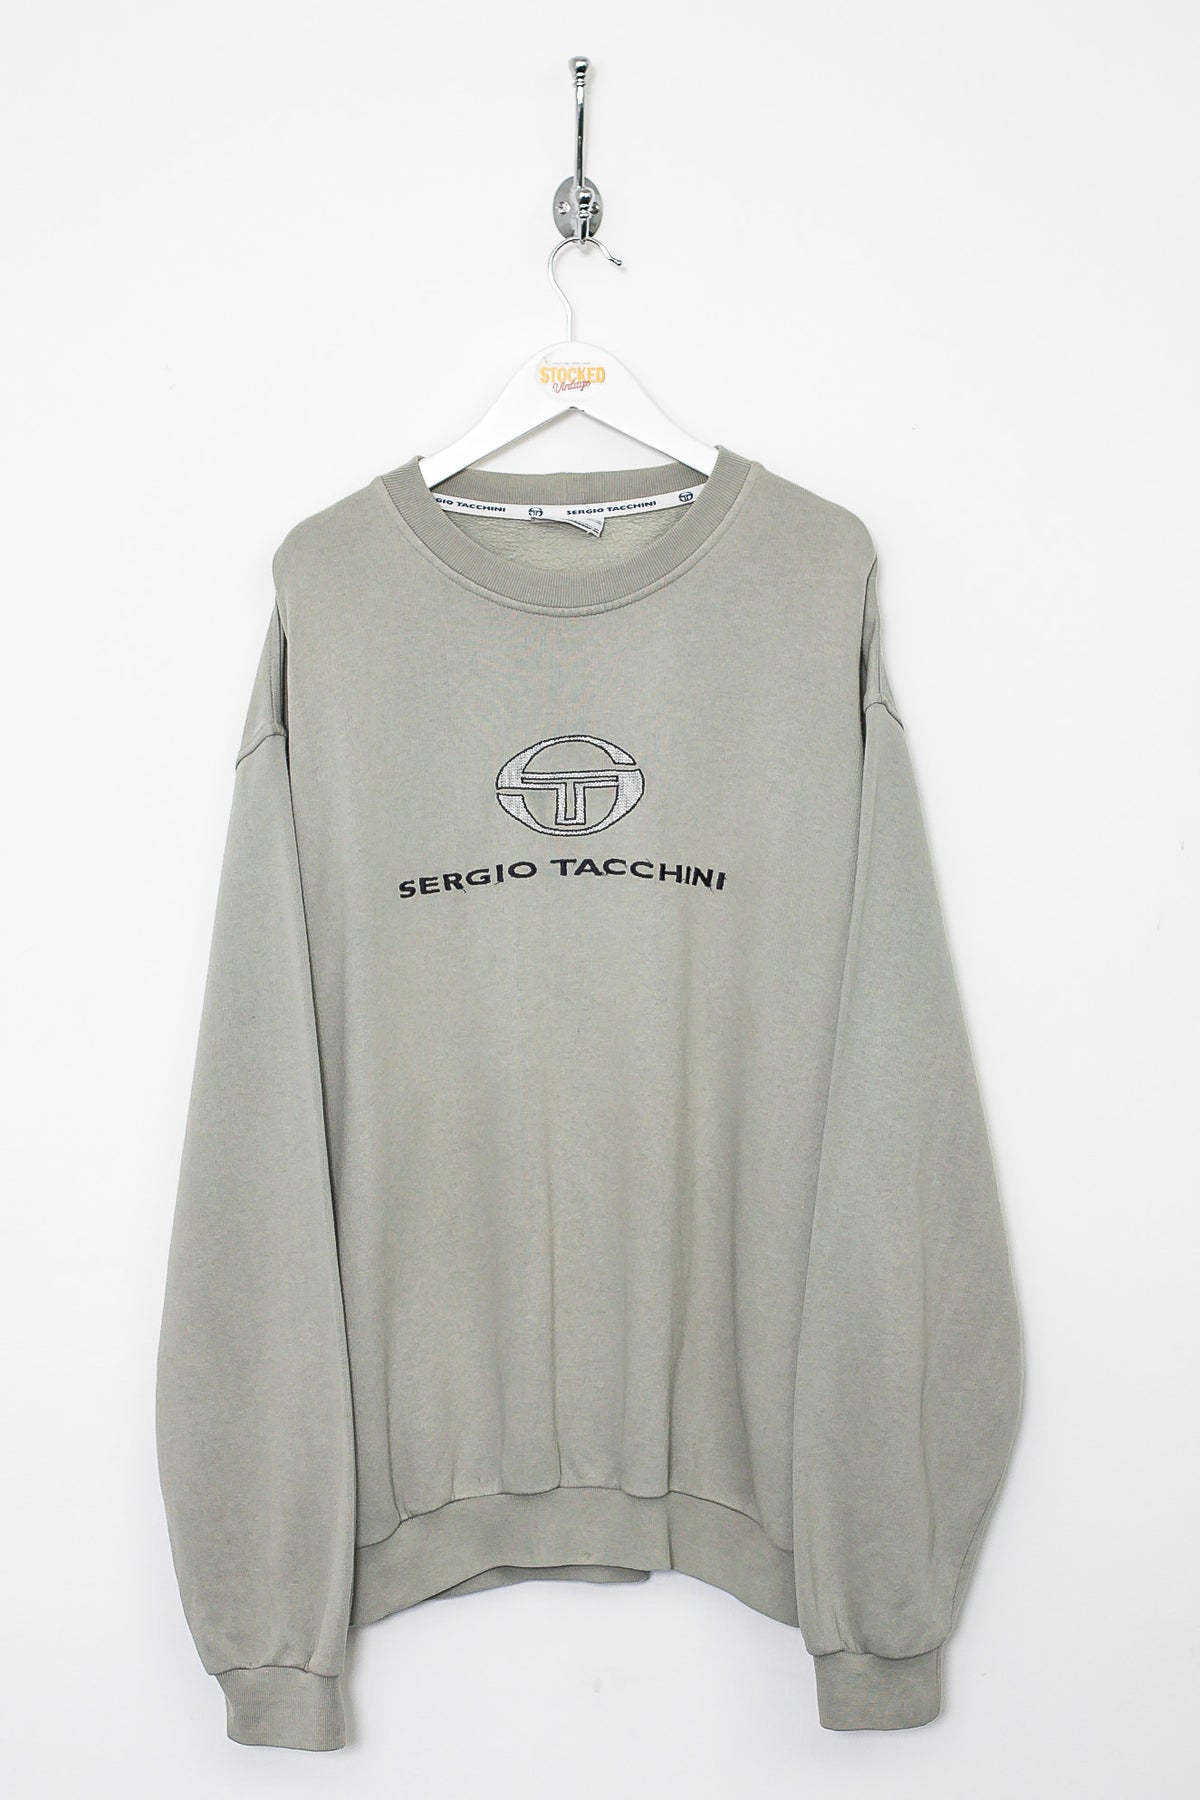 00s Sergio Tacchini Sweatshirt (XL)